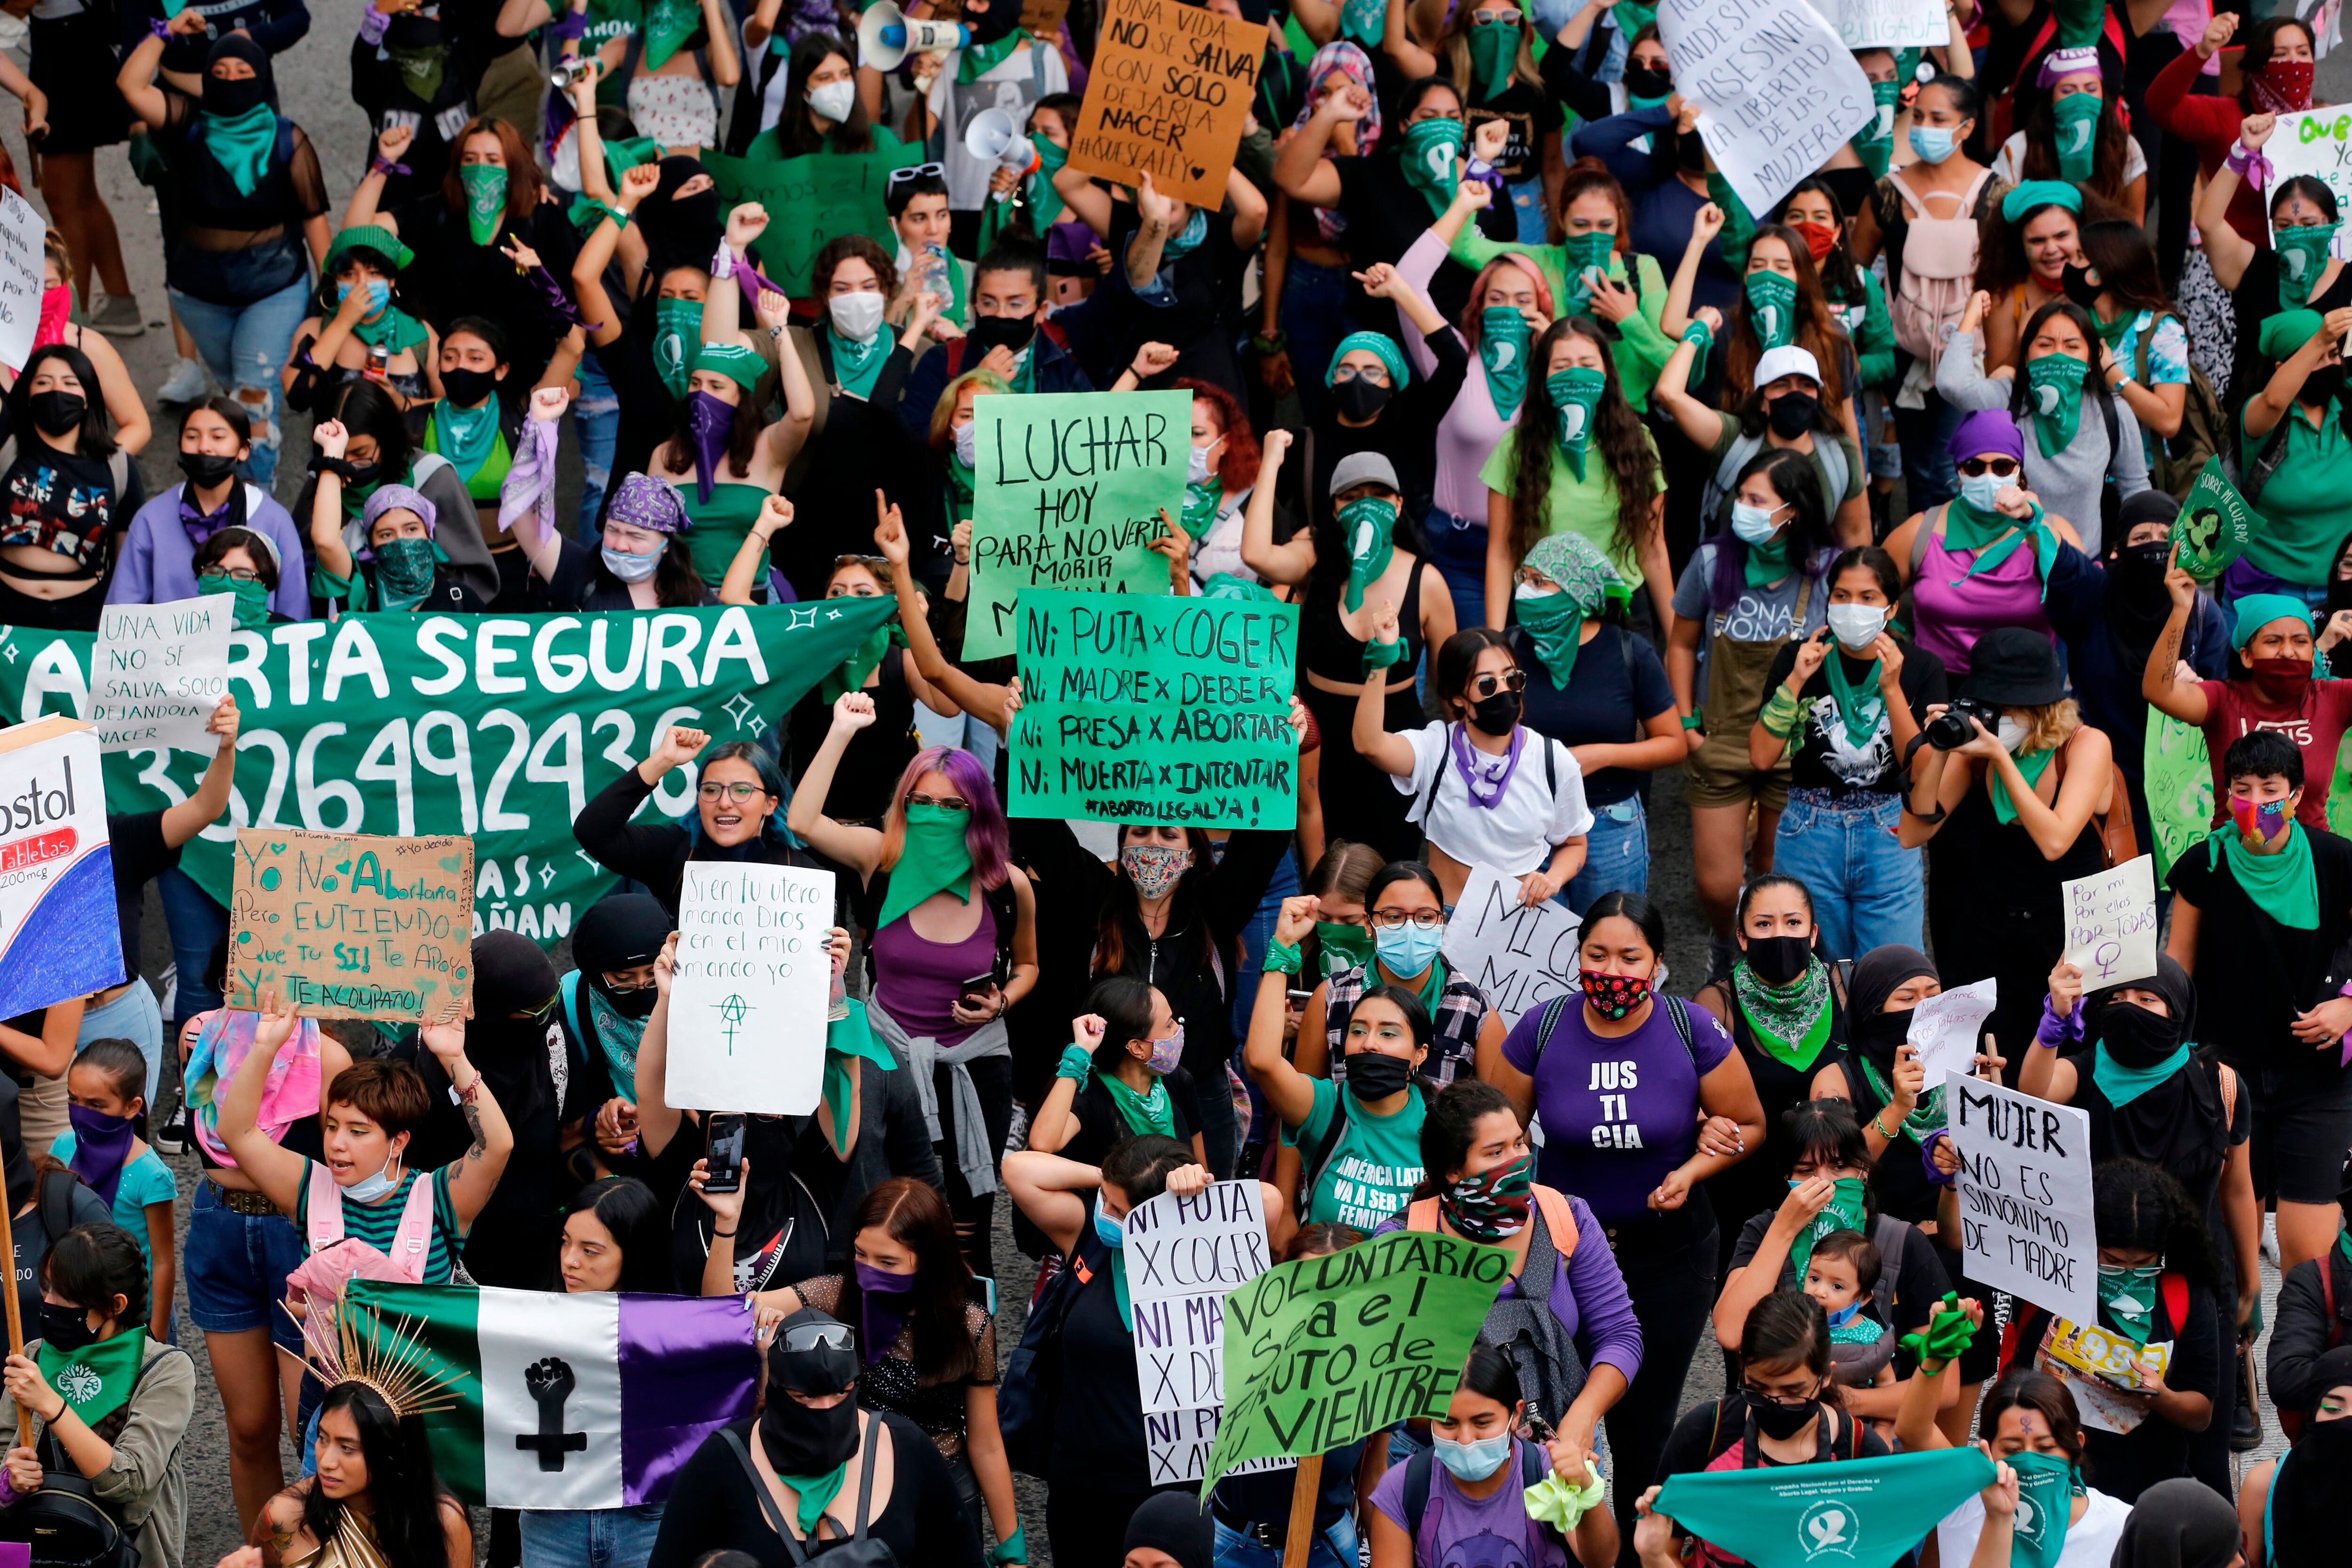 Fotografía de archivo en la que se observa a cientos de mujeres marchar en favor del aborto legal y seguro, en Guadalajara, estado de Jalisco (México). EFE/ Francisco Guasco
